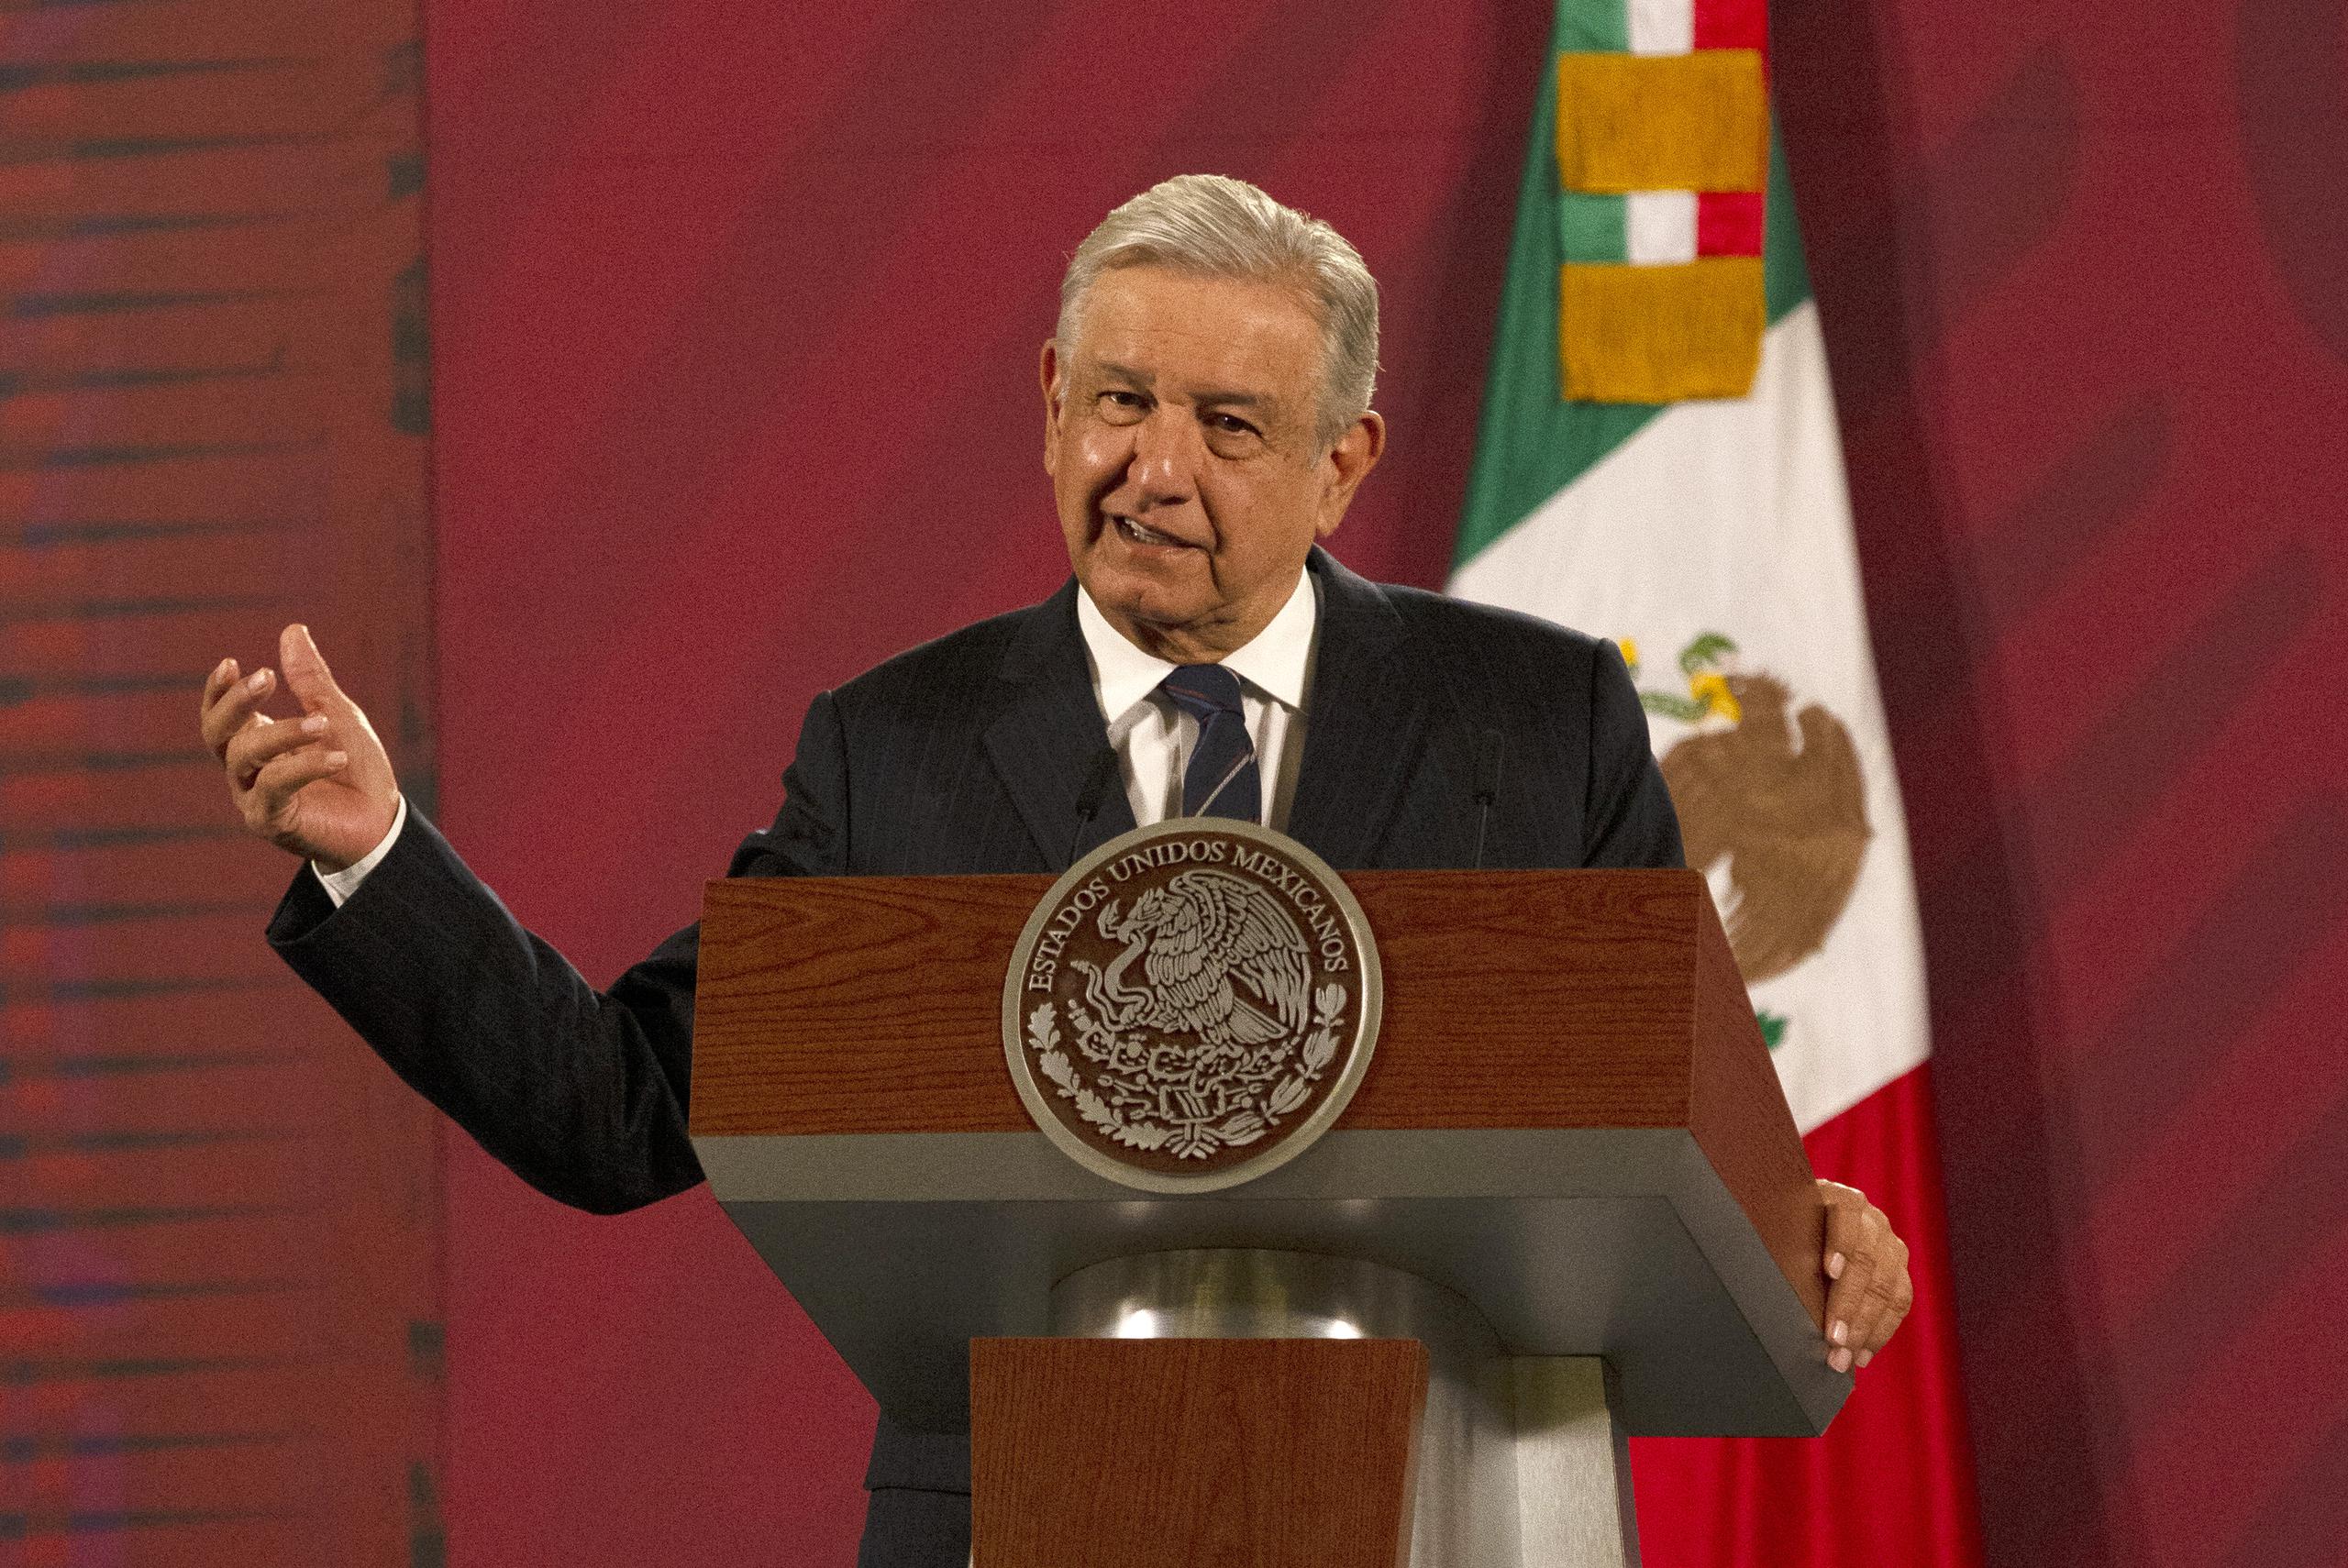 Este miércoles, López Obrador subrayó que no daría una postura propia sobre el tema, pero pidió “respeto” para la decisión judicial: “Yo lo que opino es que esta es una decisión del Poder Judicial, de la Suprema Corte, que fue prácticamente unánime y que debe respetarse”.